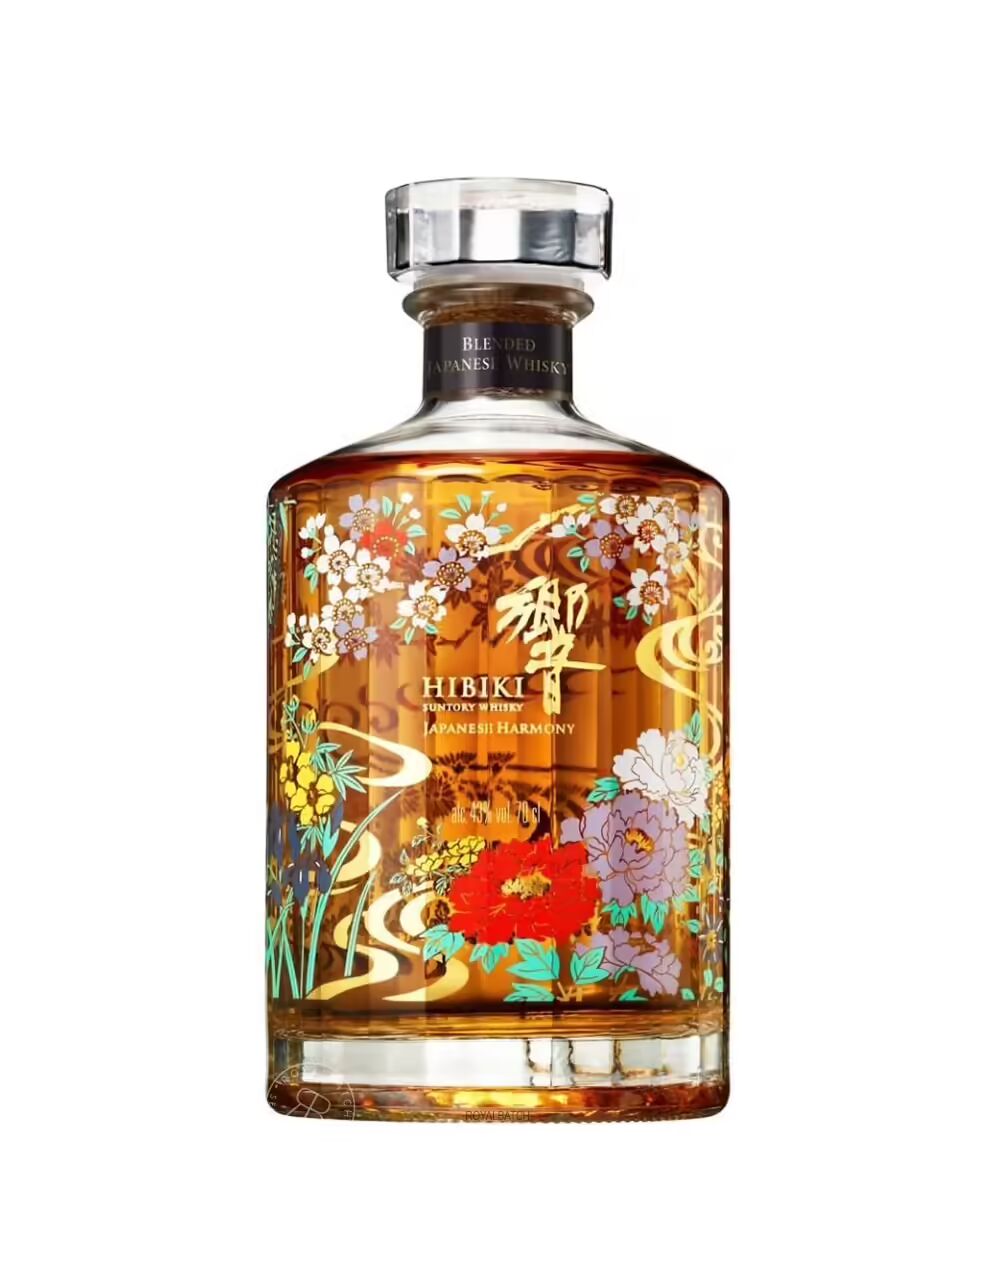 Hibiki Limited Edition Japanese Harmony Whisky